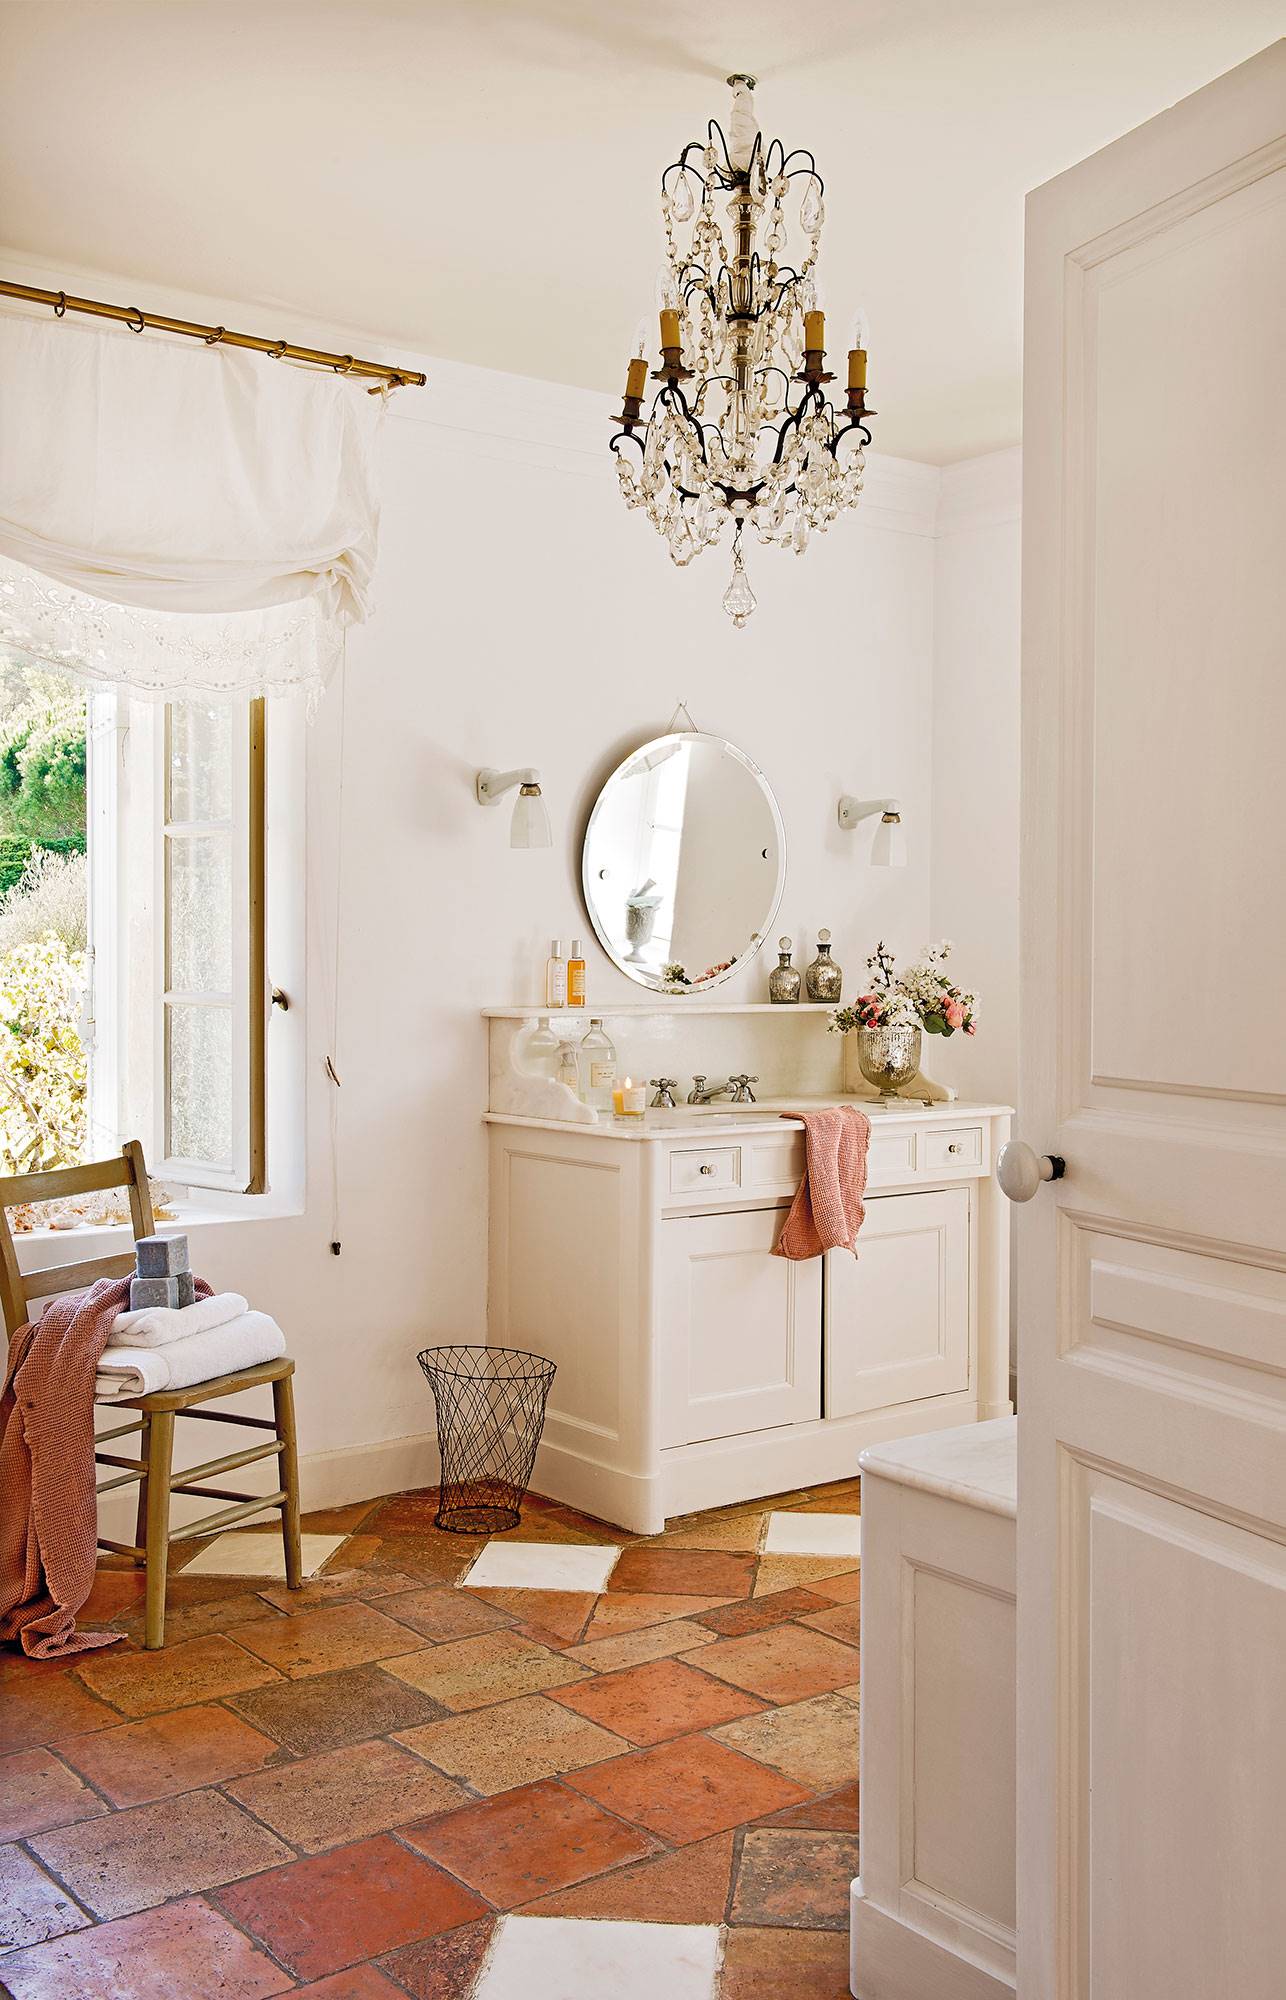 Baño con mueble de baño blanco, suelos de barro y lámpara de araña. 